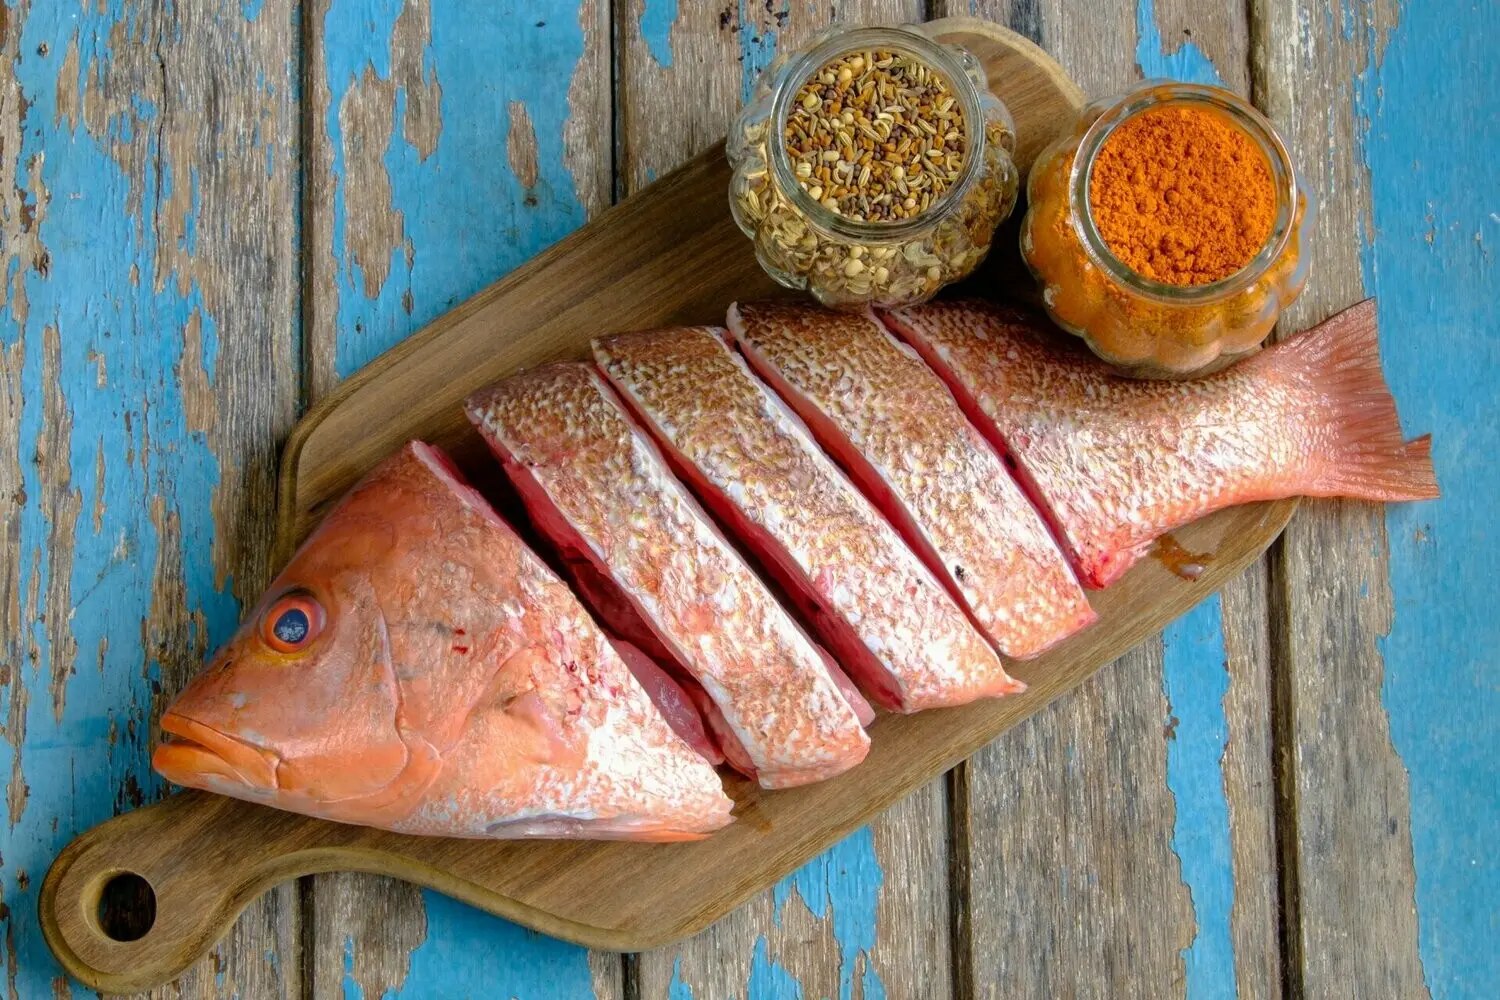 pescado huachinango precio - Qué tan bueno es el pescado huachinango